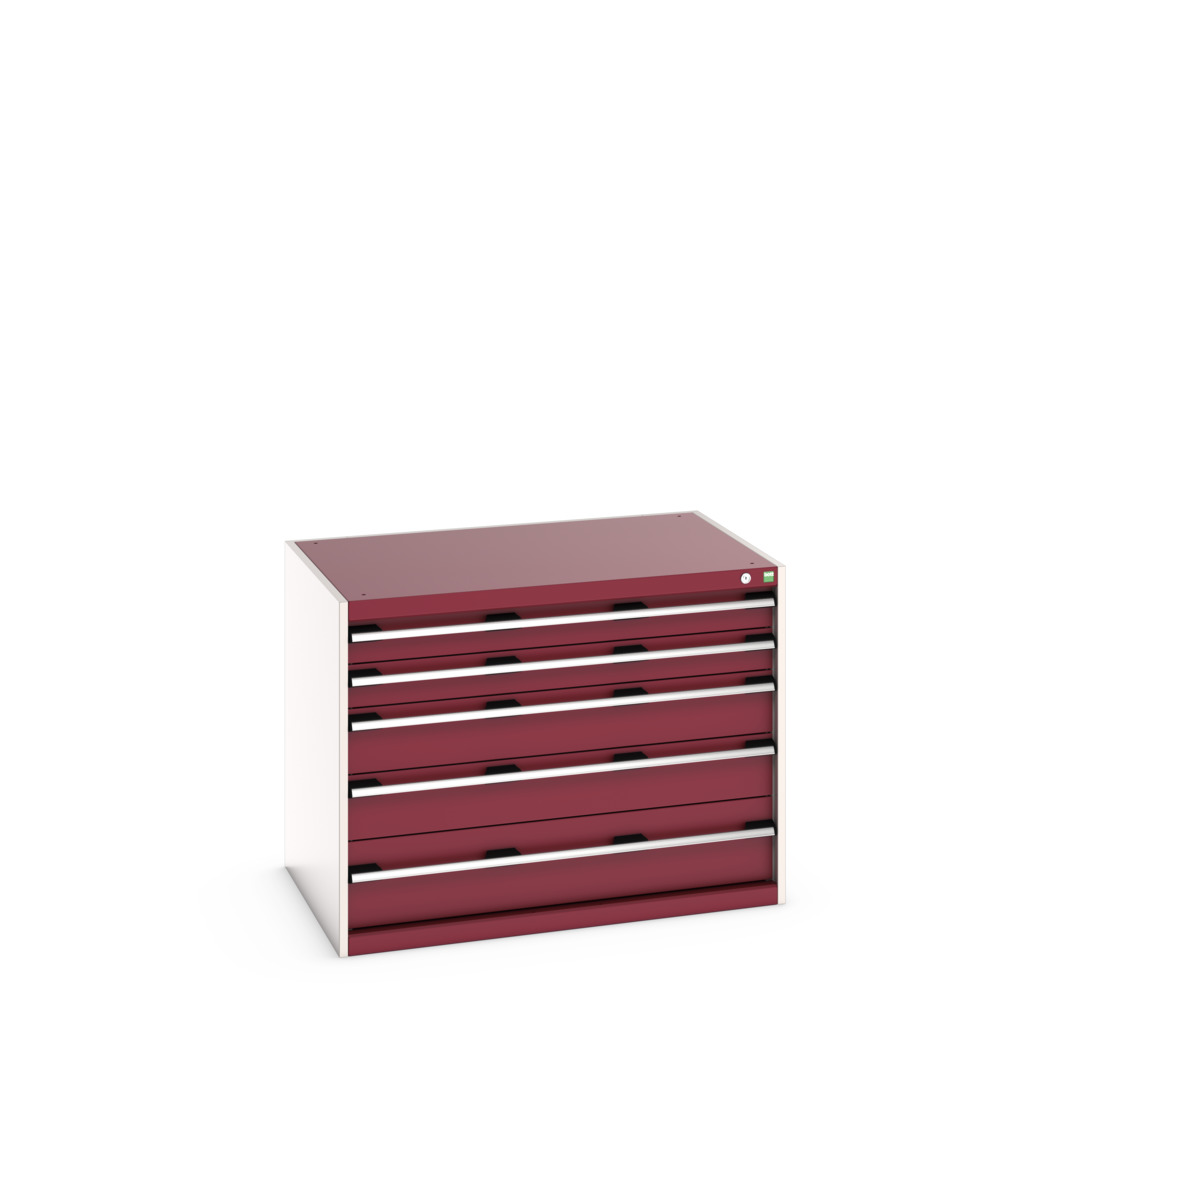 40029010.24V - cubio drawer cabinet